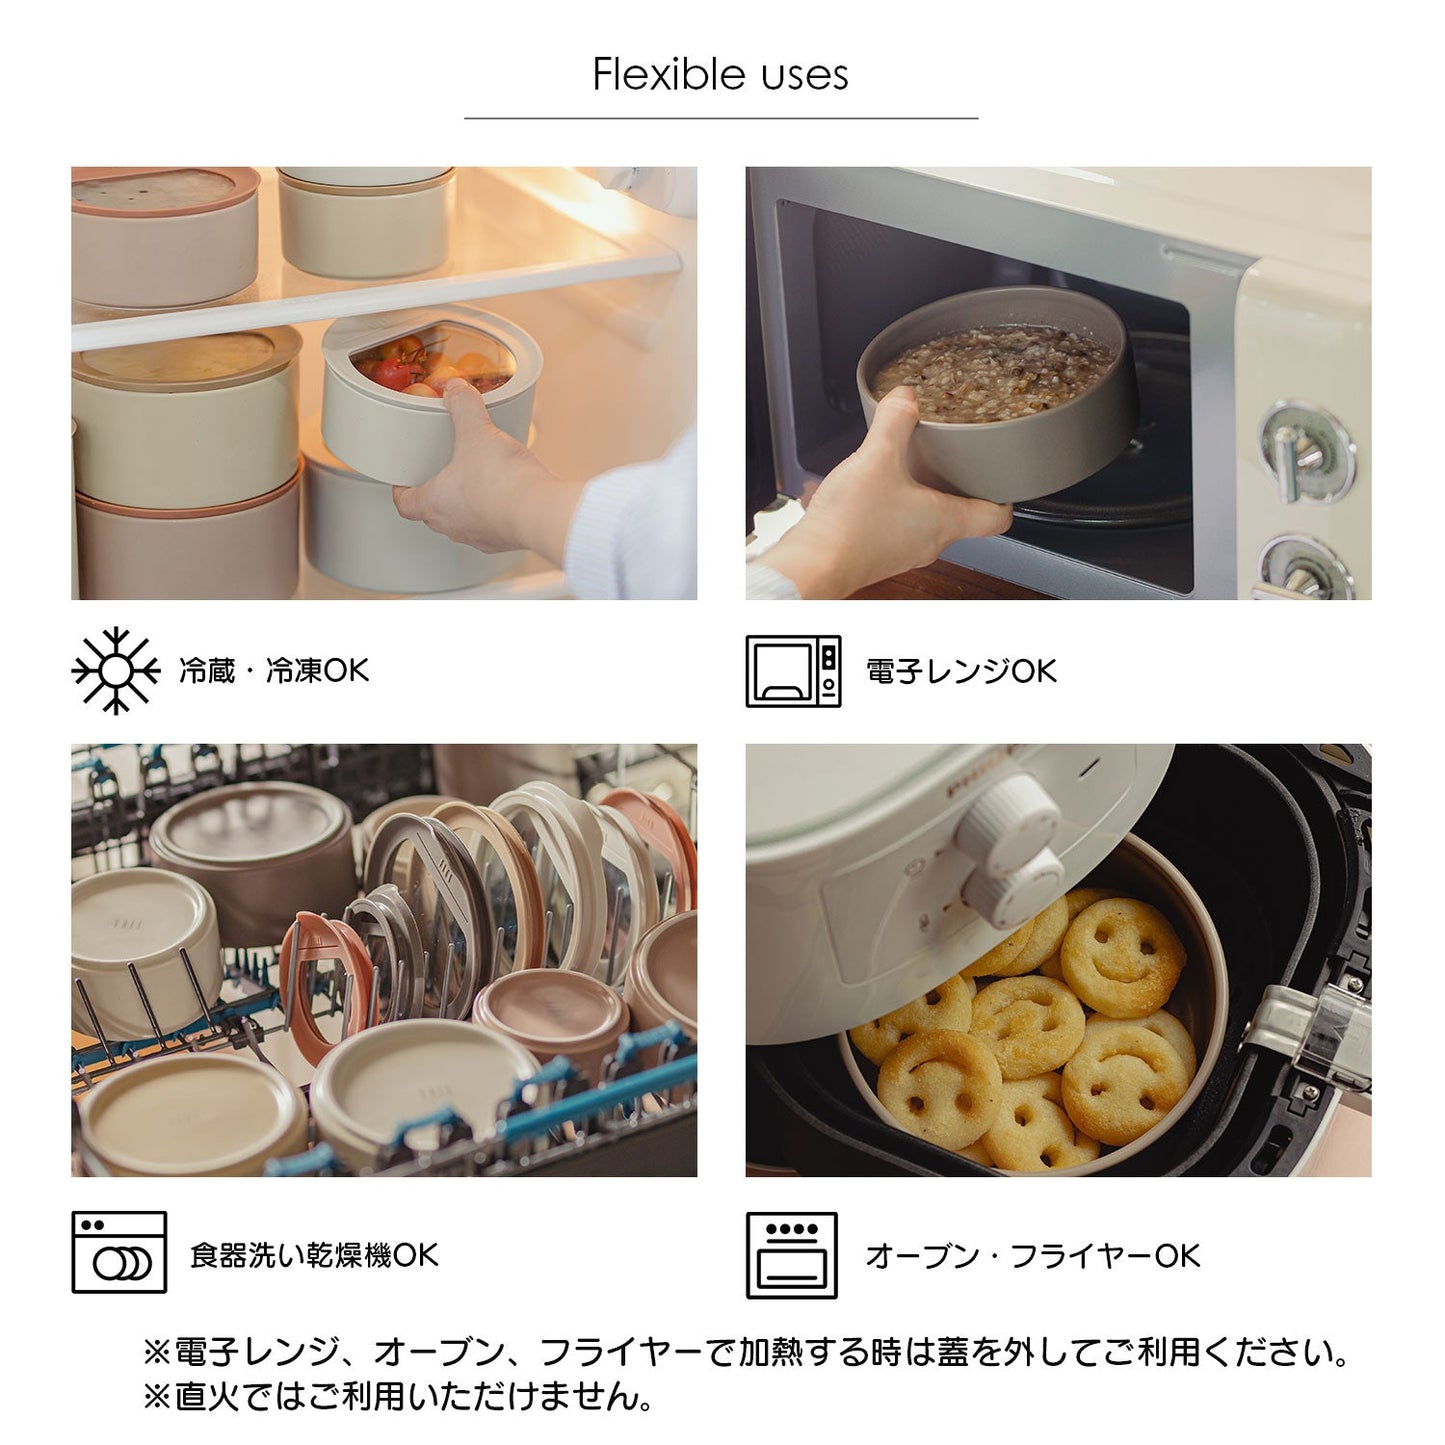 FIKAONE陶磁器製食品保存容器 650ml単品